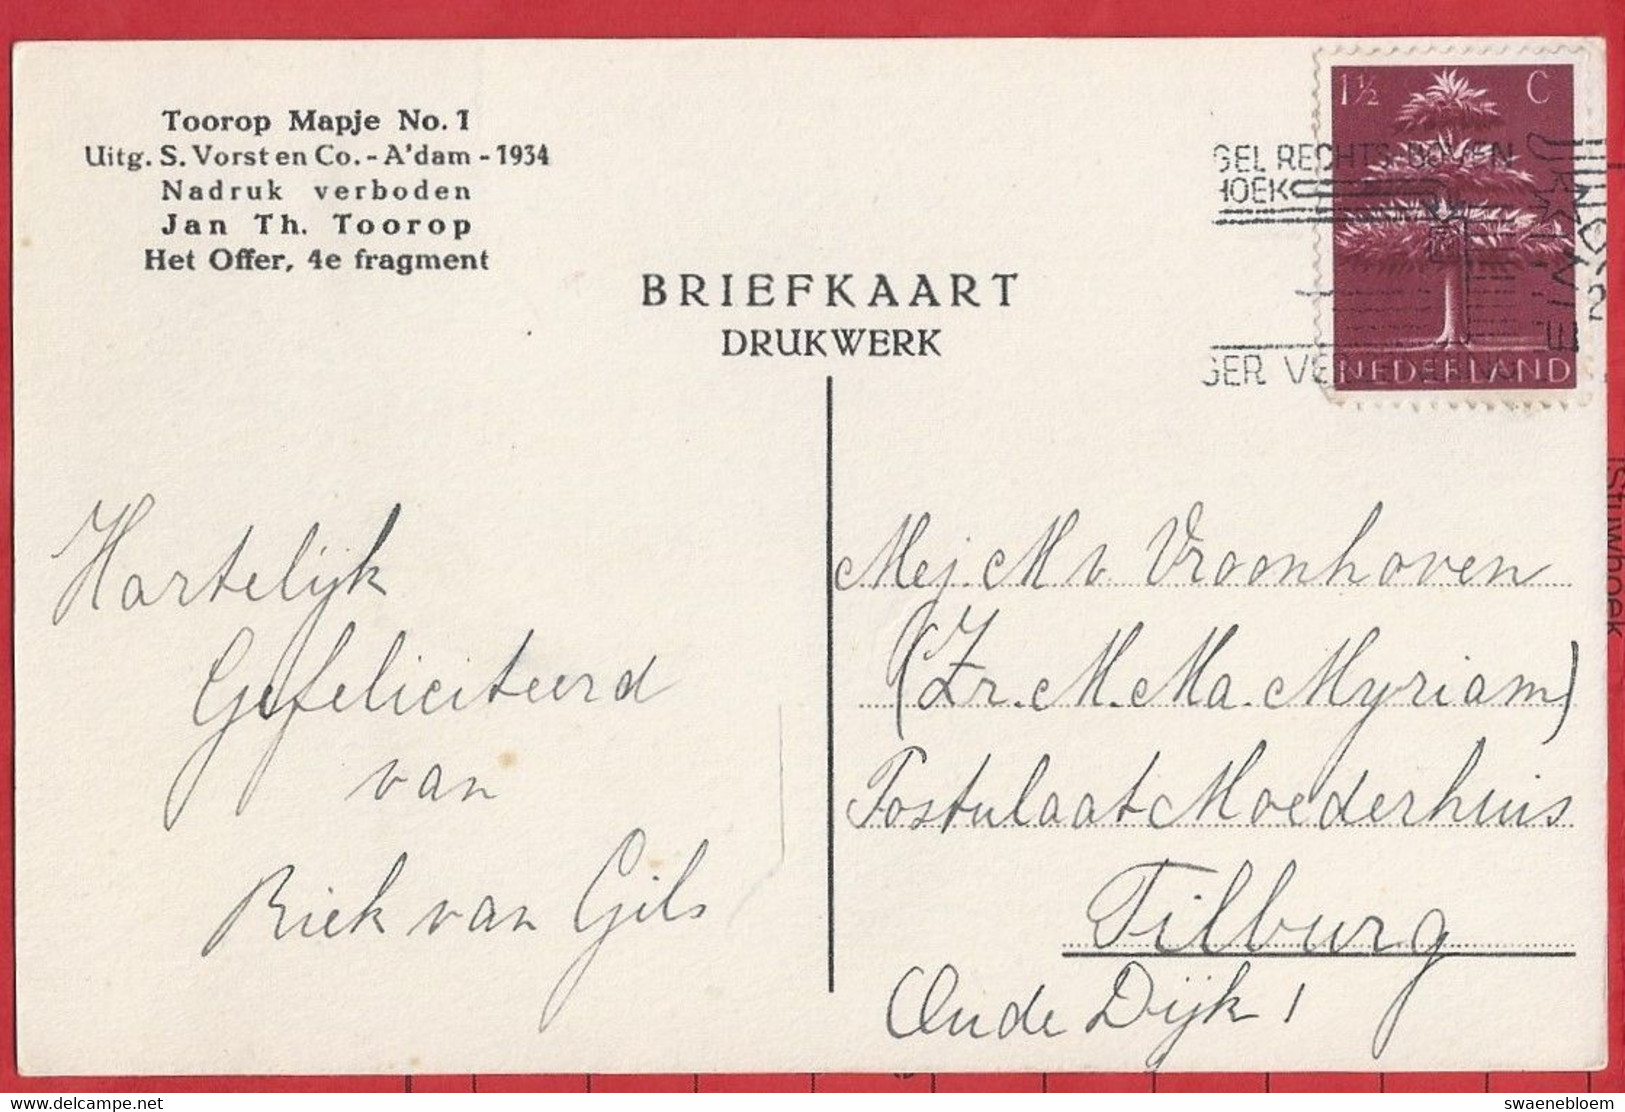 NL.- JAN TOOROP. HET OFFER 4e FRAGMENT. Uitg. S. Vorst En Co, Amsterdam. 1934. J. Th. Toorop. - Toorop, Jan